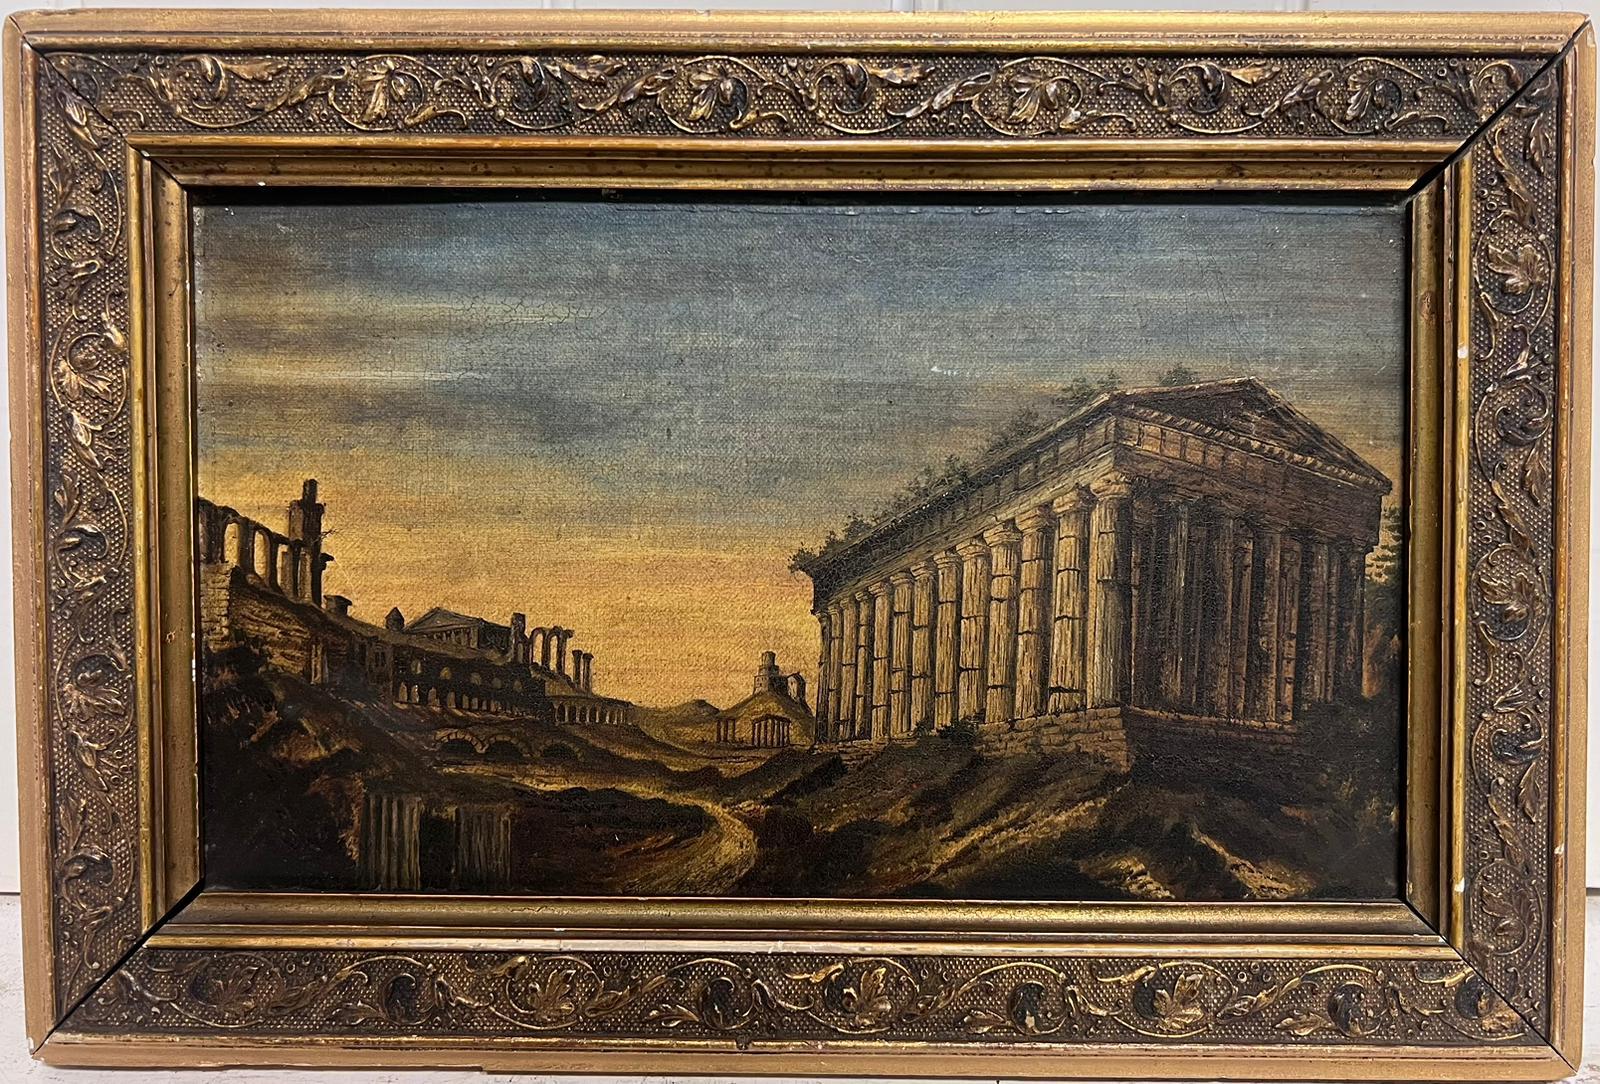 Italienische Grand Tour, 1800er Jahre, Ölgemälde, Theseus- Tempel Athen in Landschaft – Painting von Italian Grand Tour